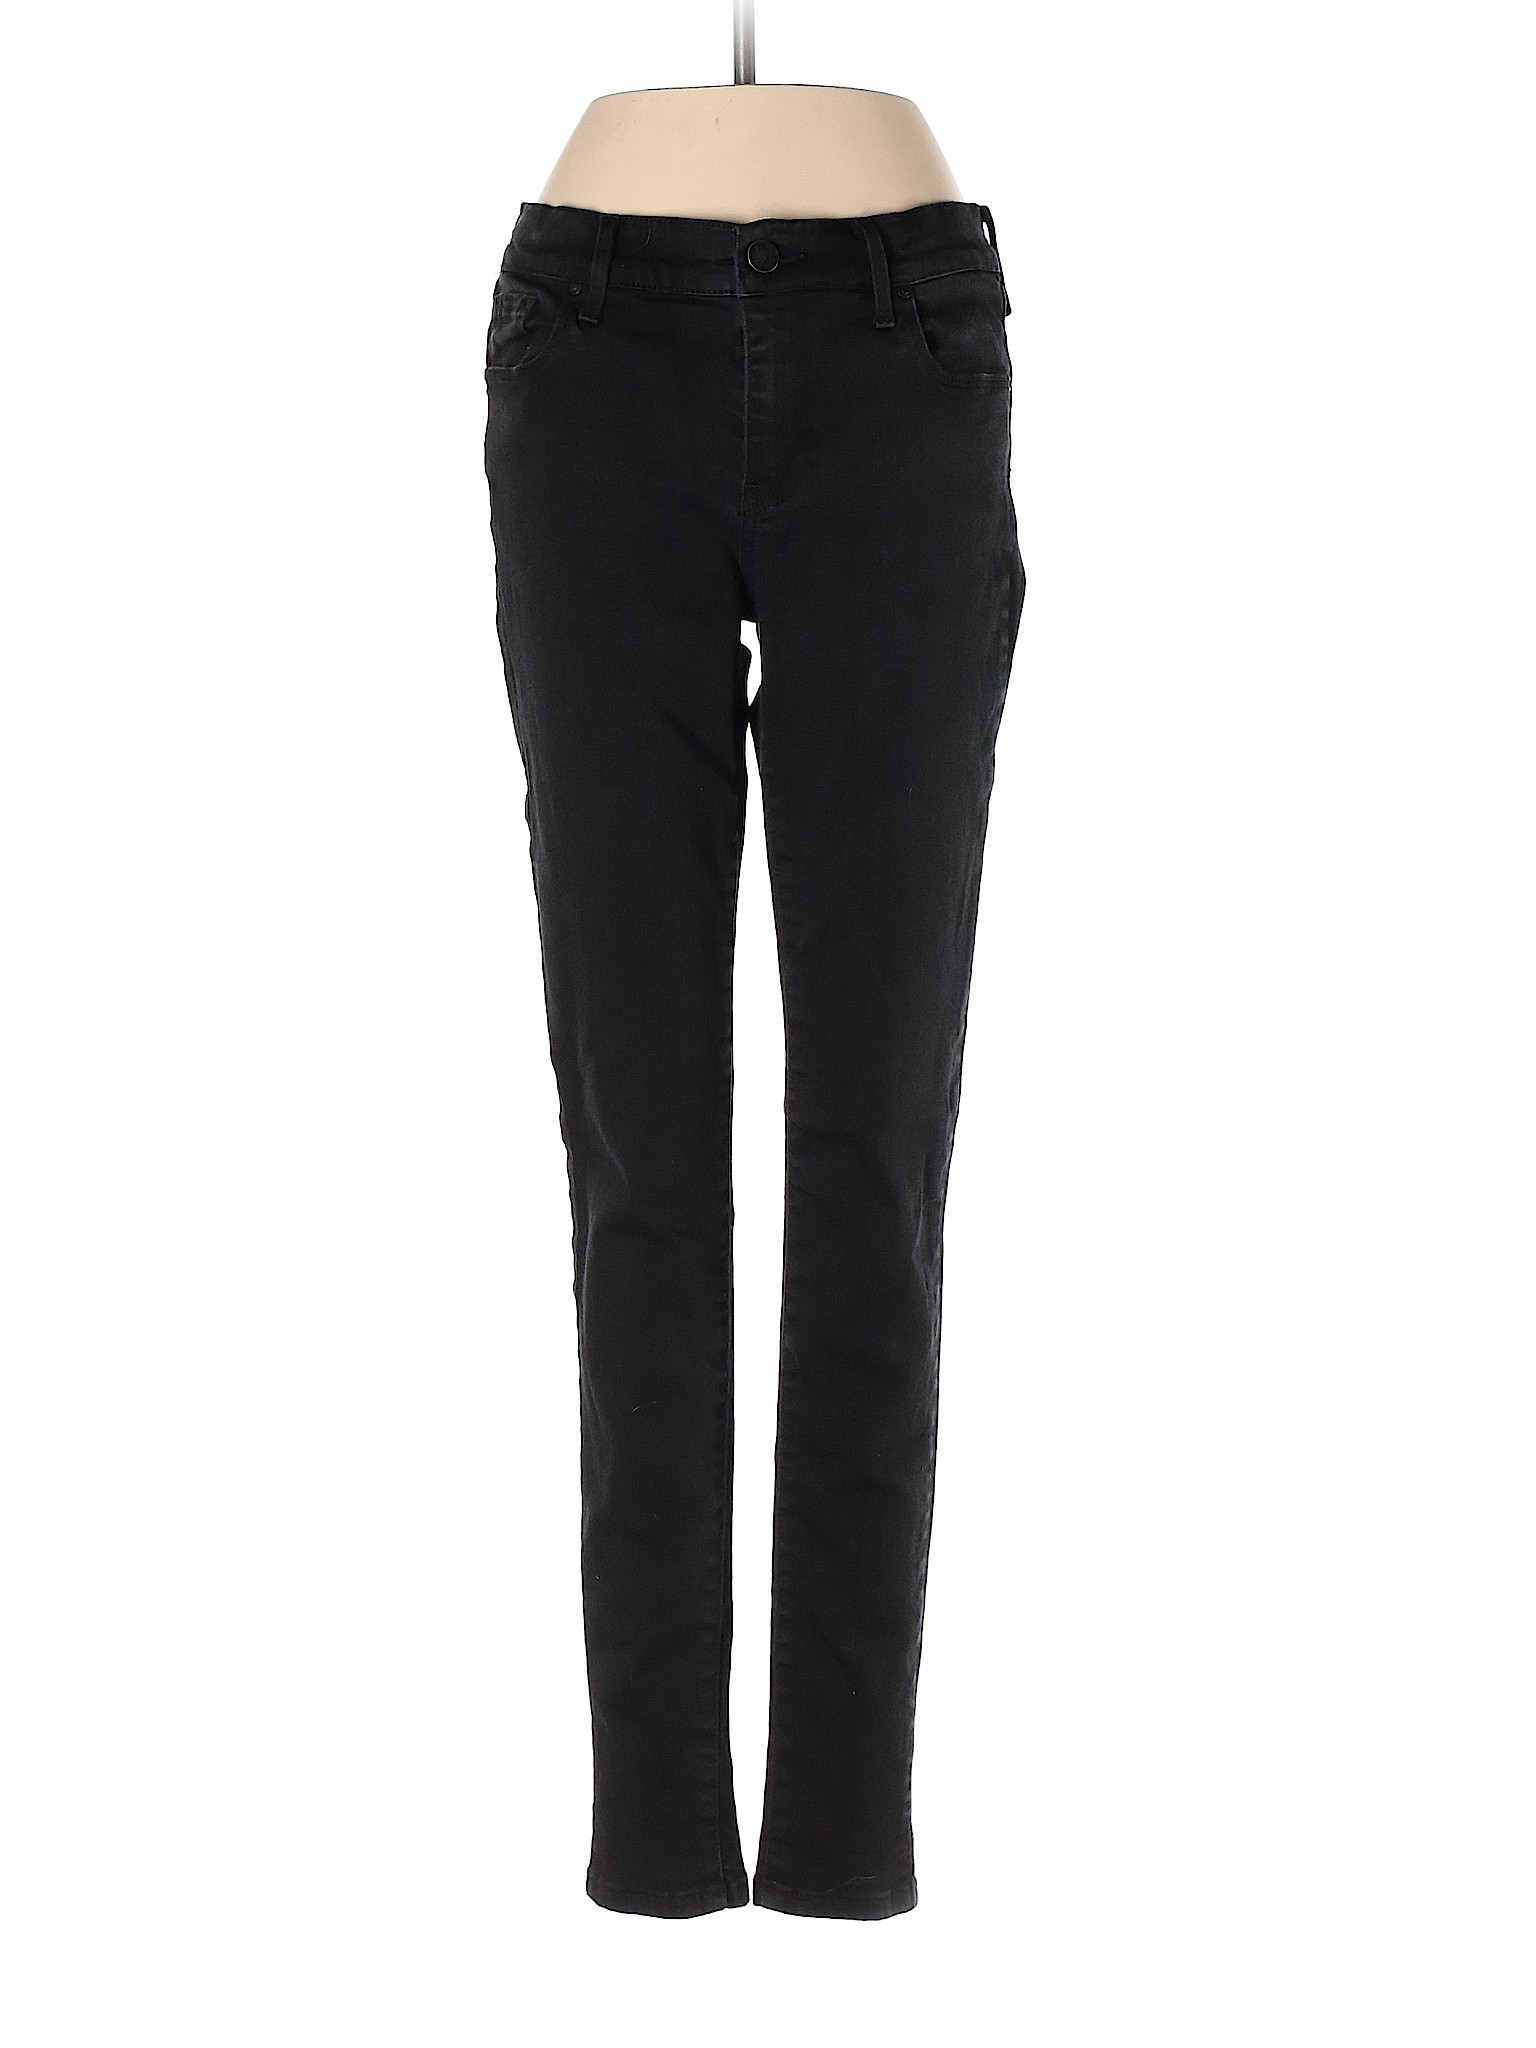 Mott & Bow Women Black Jeans 29W | eBay